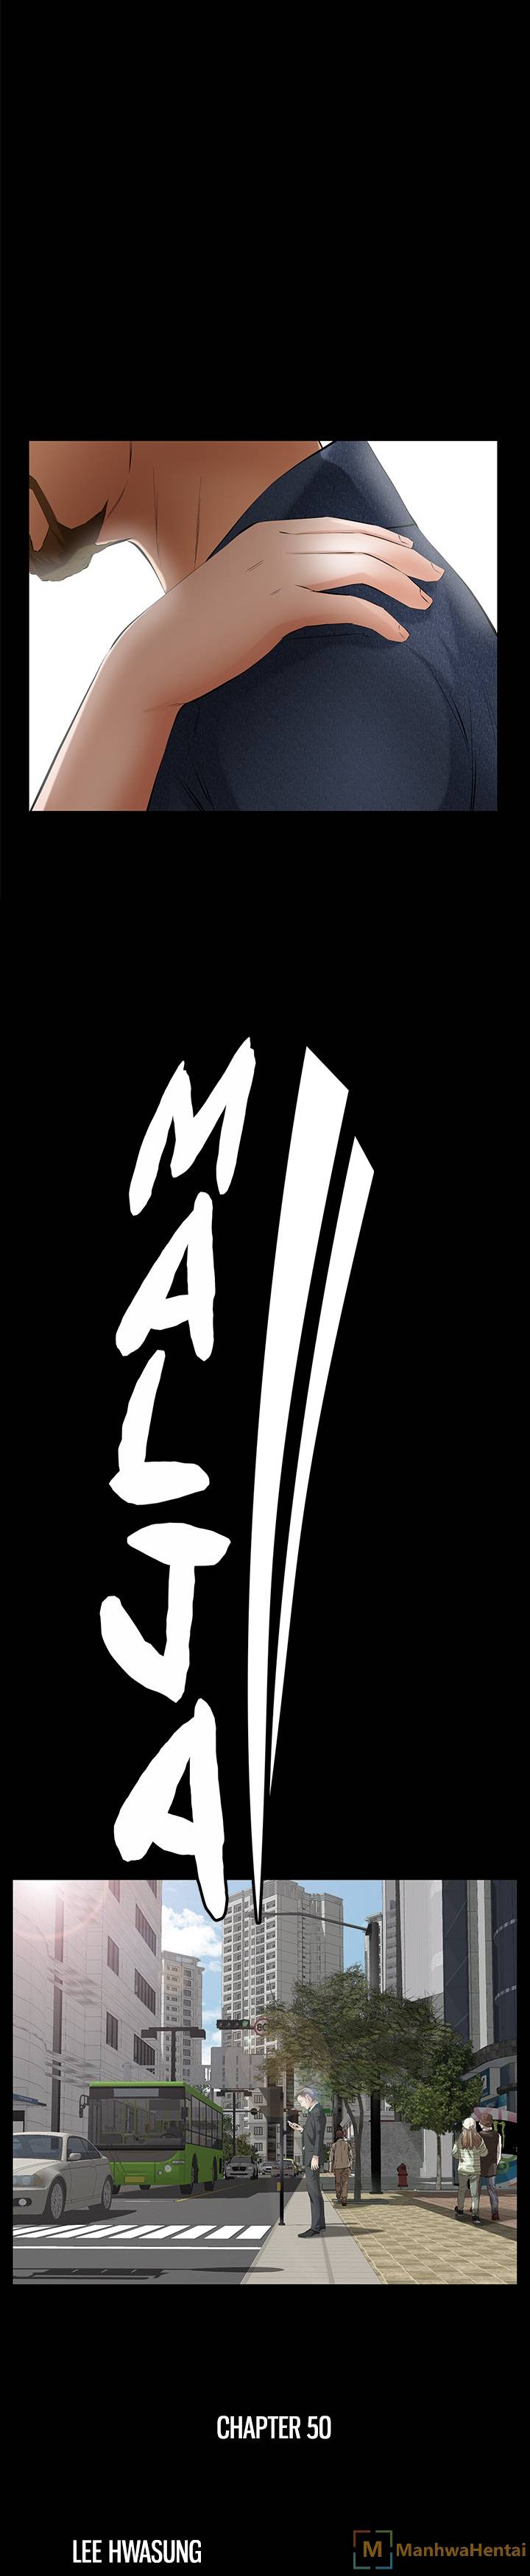 Malja - Chapter 50 Page 2